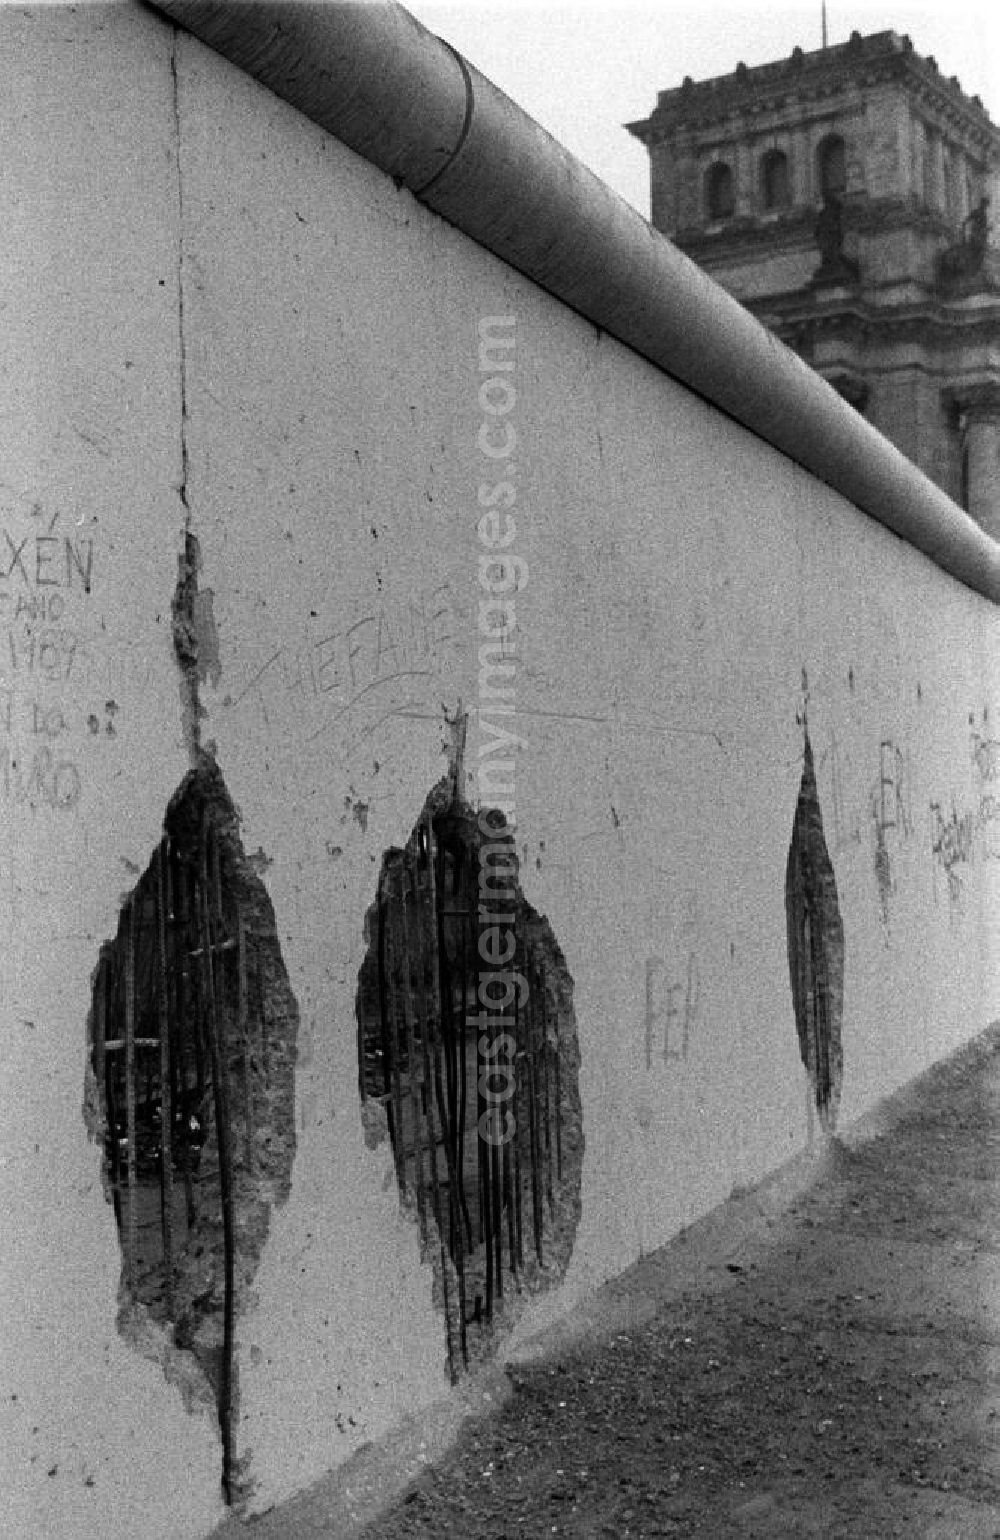 GDR picture archive: Berlin - Blick über die bereits löschrige Mauer auf den Berliner Reichstag. Als Erinnerung wurden gern Stücke der Mauer mitgenommen, so entstanden die Löscher, sie hießen auch Mauerspechte.